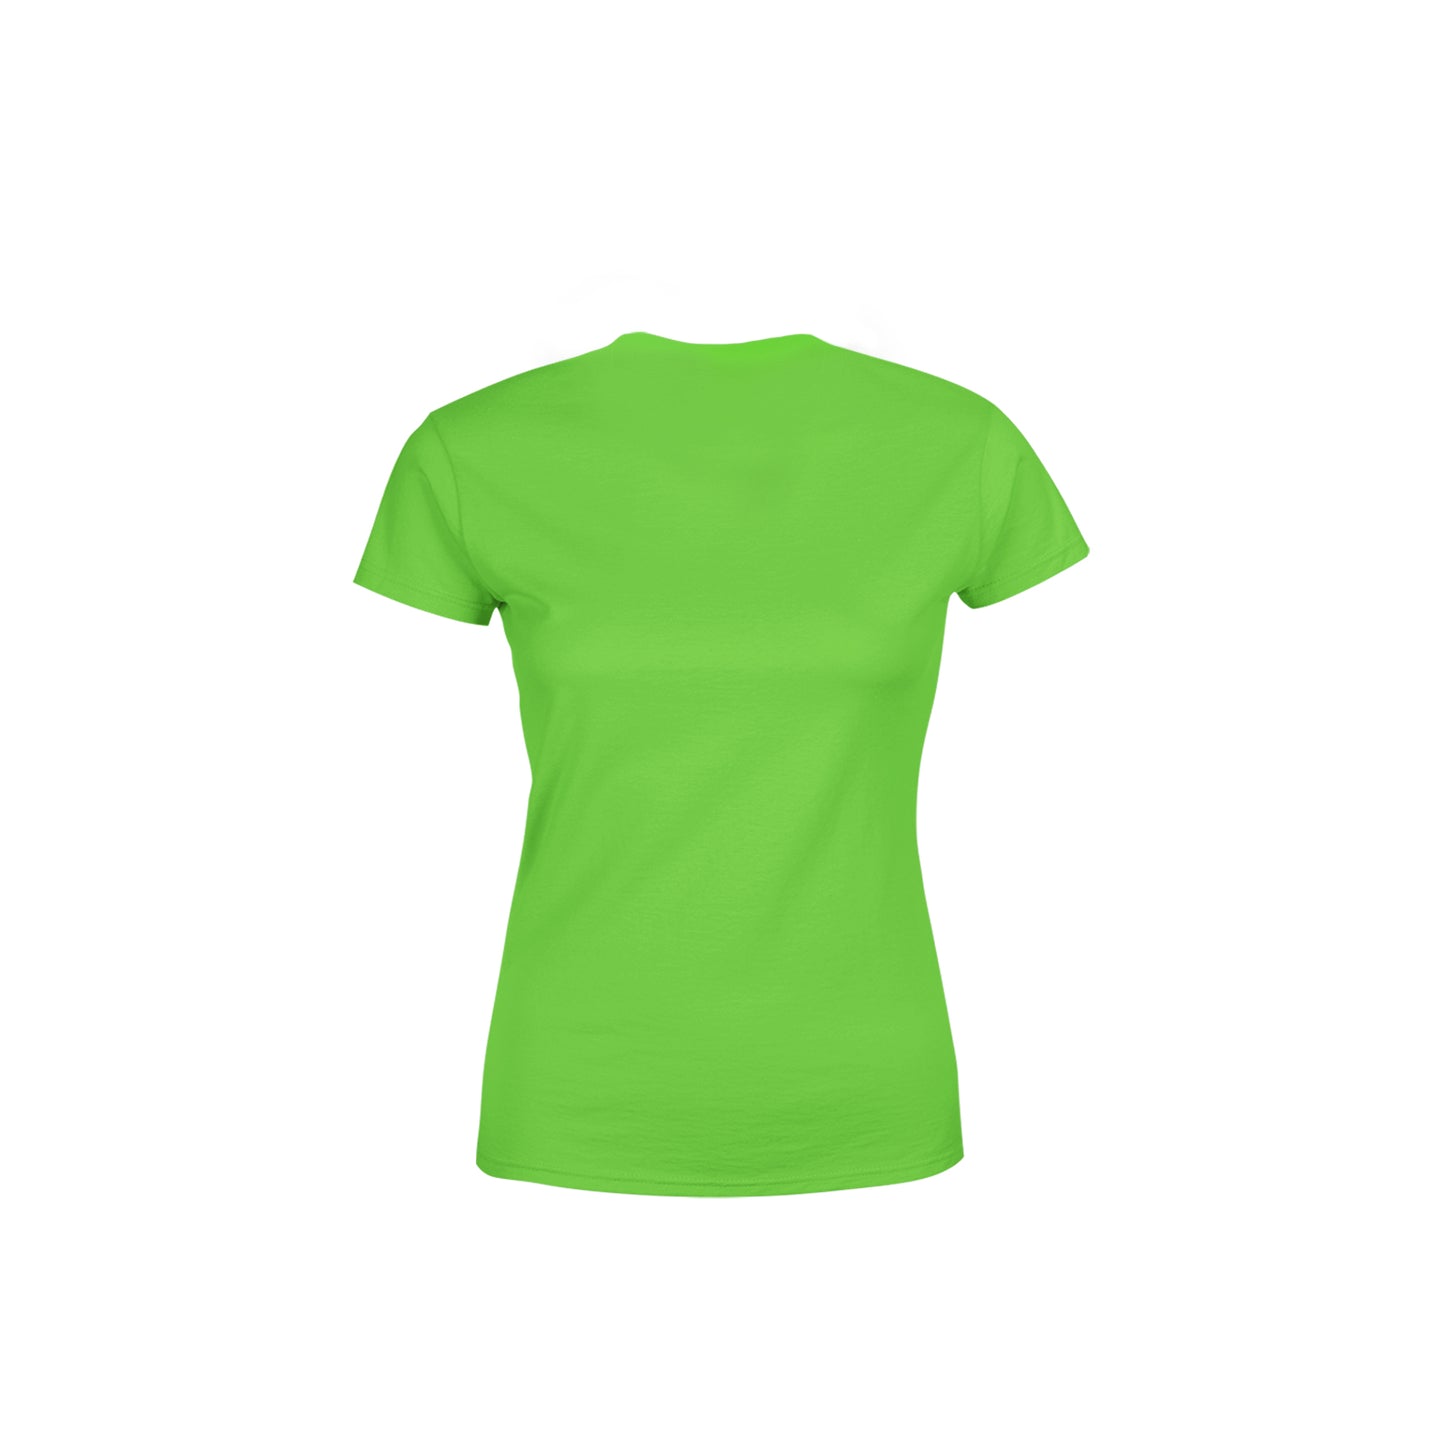 67 Number Women's T-Shirt (Liril Green)